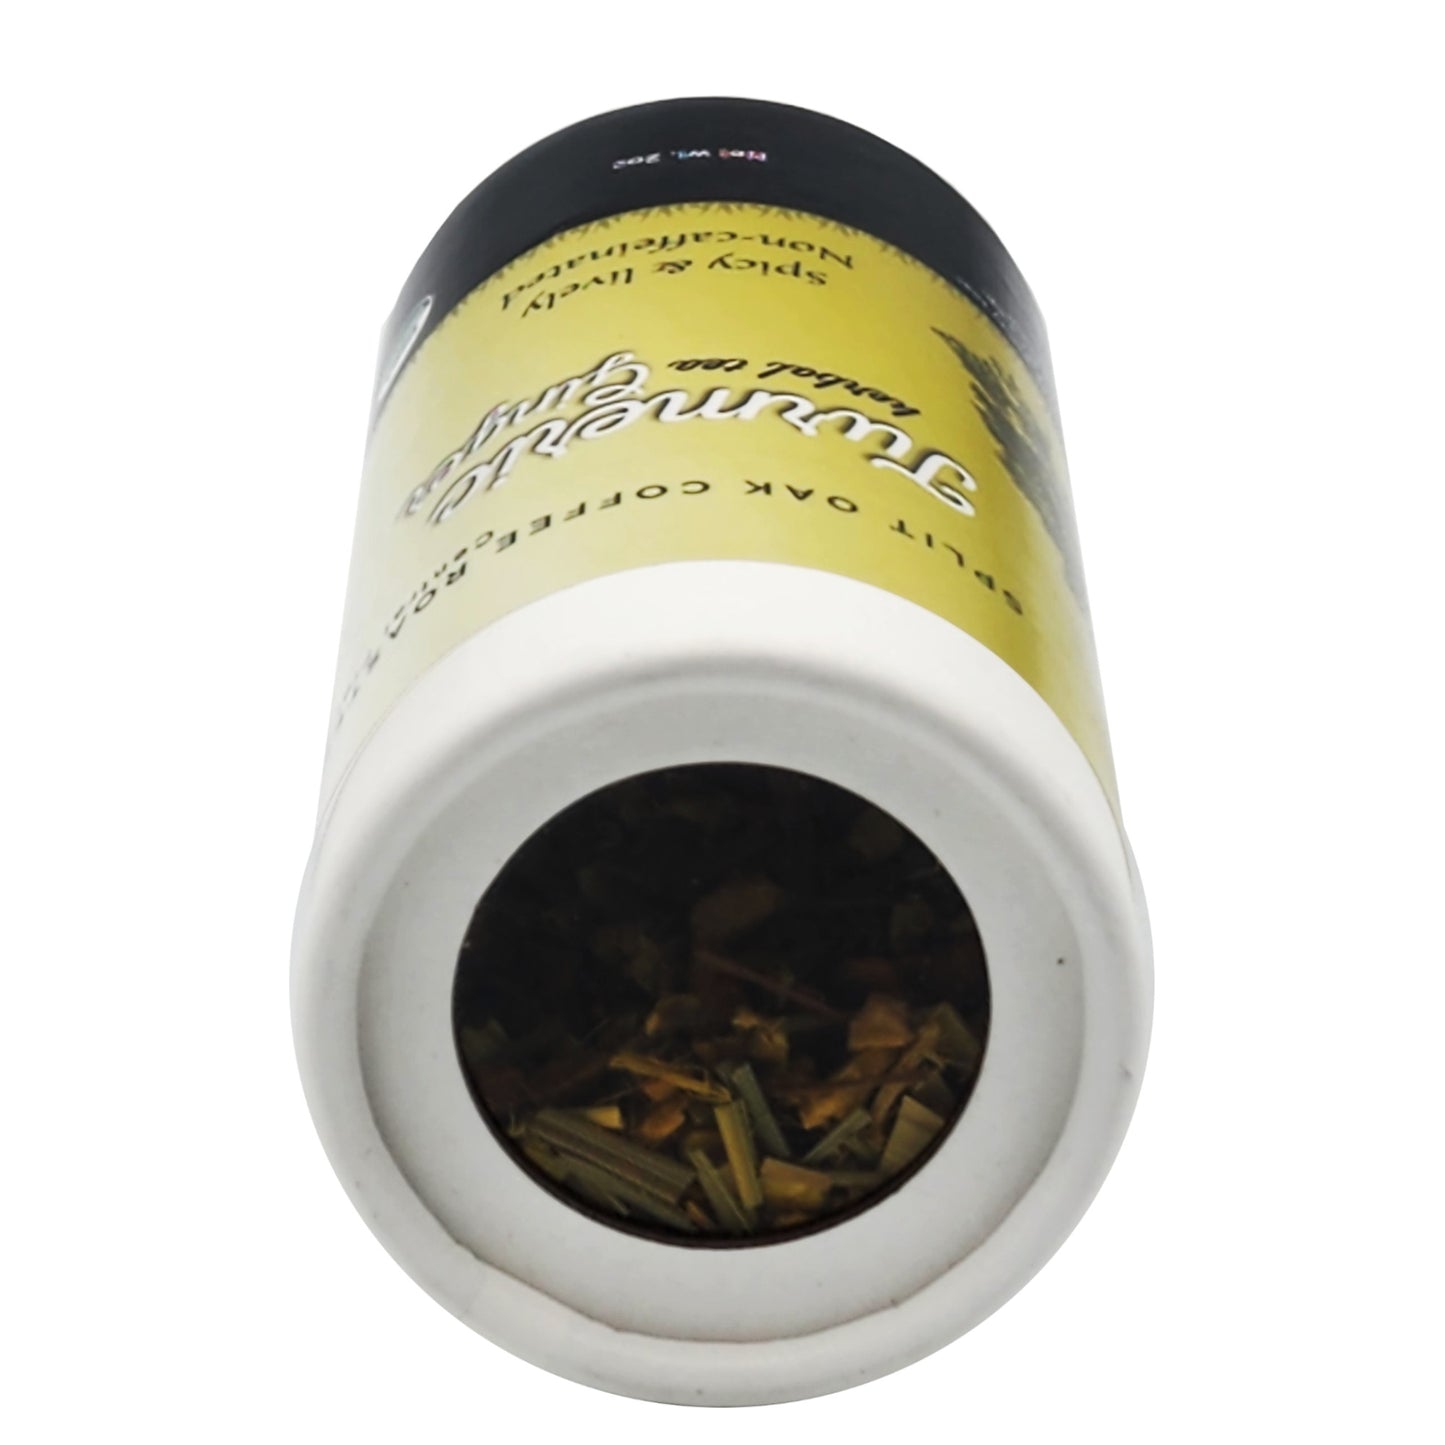 Turmeric Ginger Herbal Tea